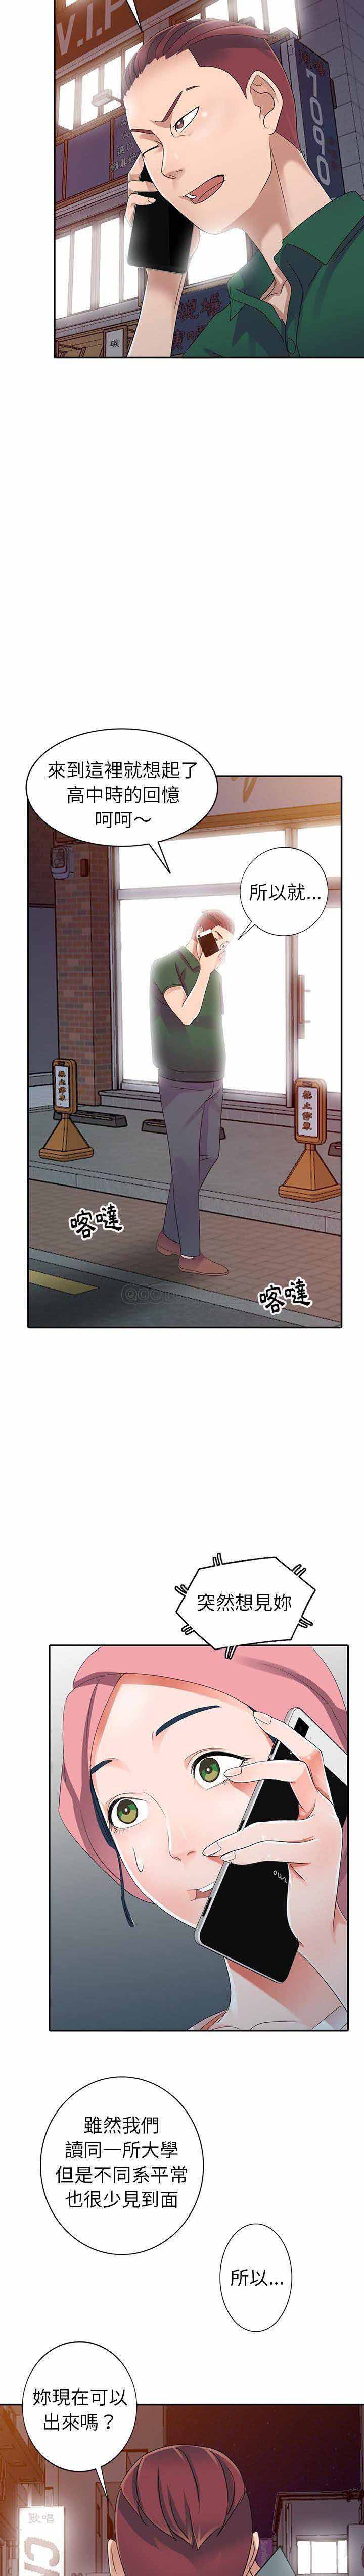 韩国污漫画 愛的第一課 第8话 20